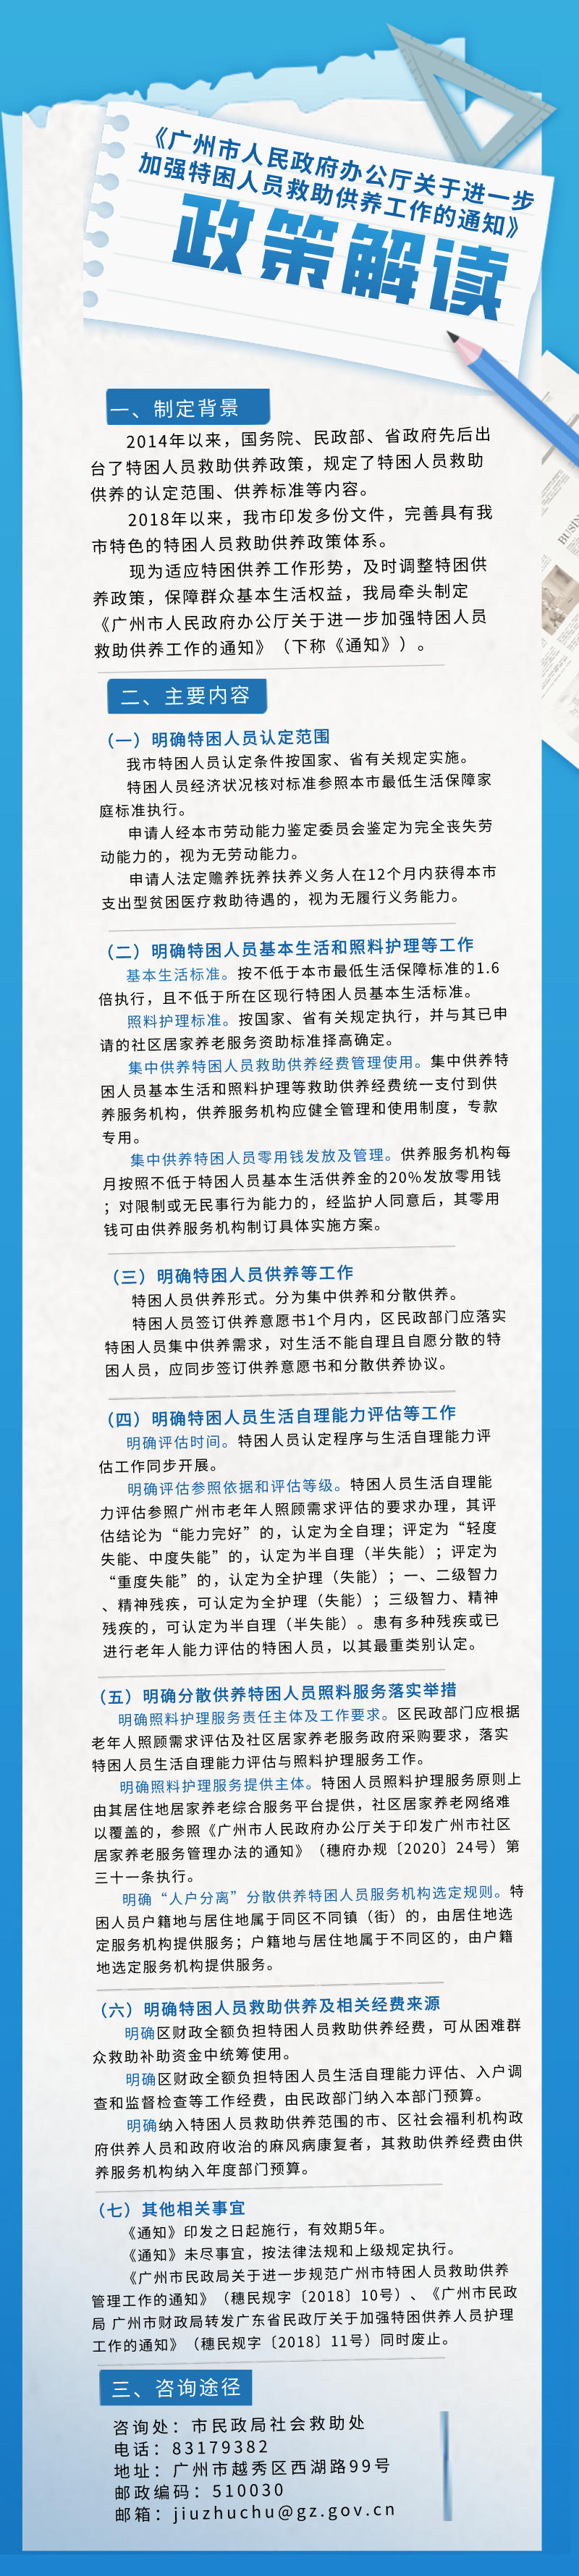 【一图读懂】《广州市人民政府办公厅关于进一步加强特困人员救助供养工作的通知》